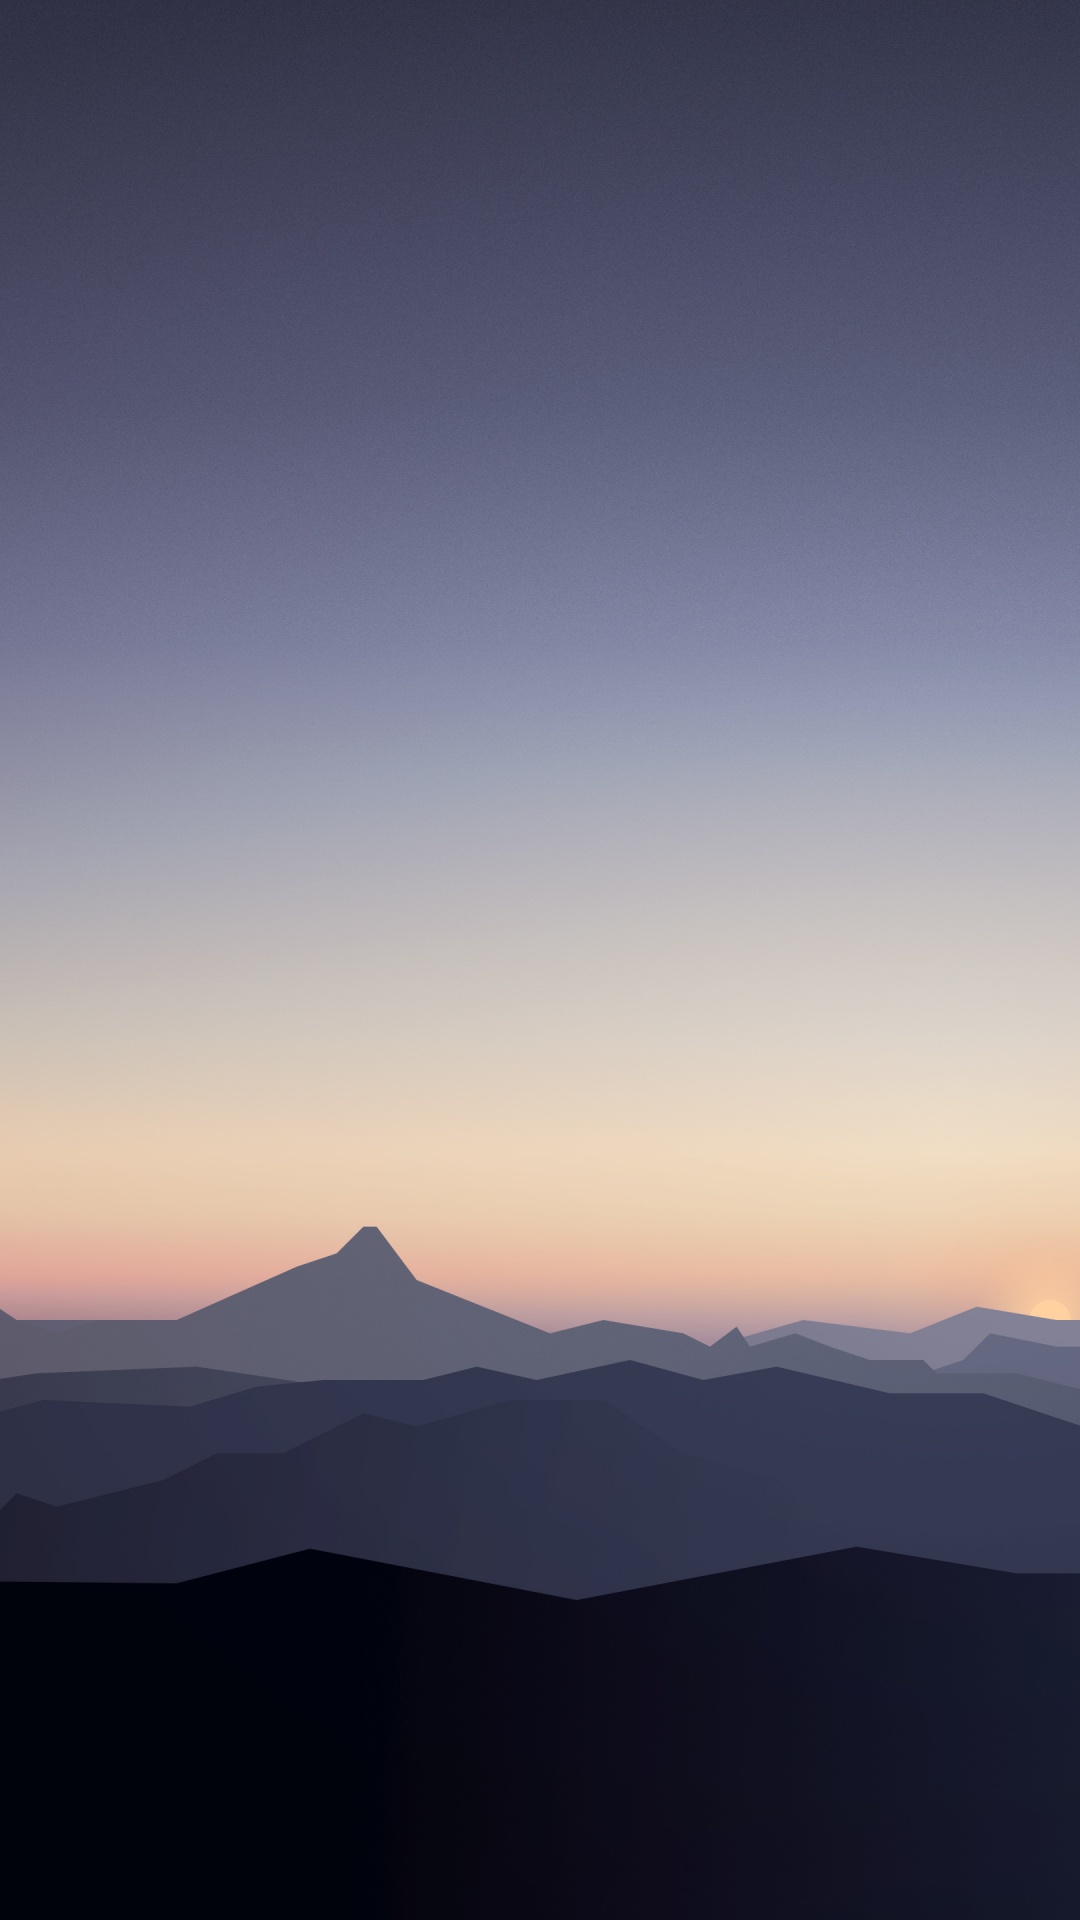 地平线, 山脉, 余辉, 日出, 气氛 壁纸 1080x1920 允许